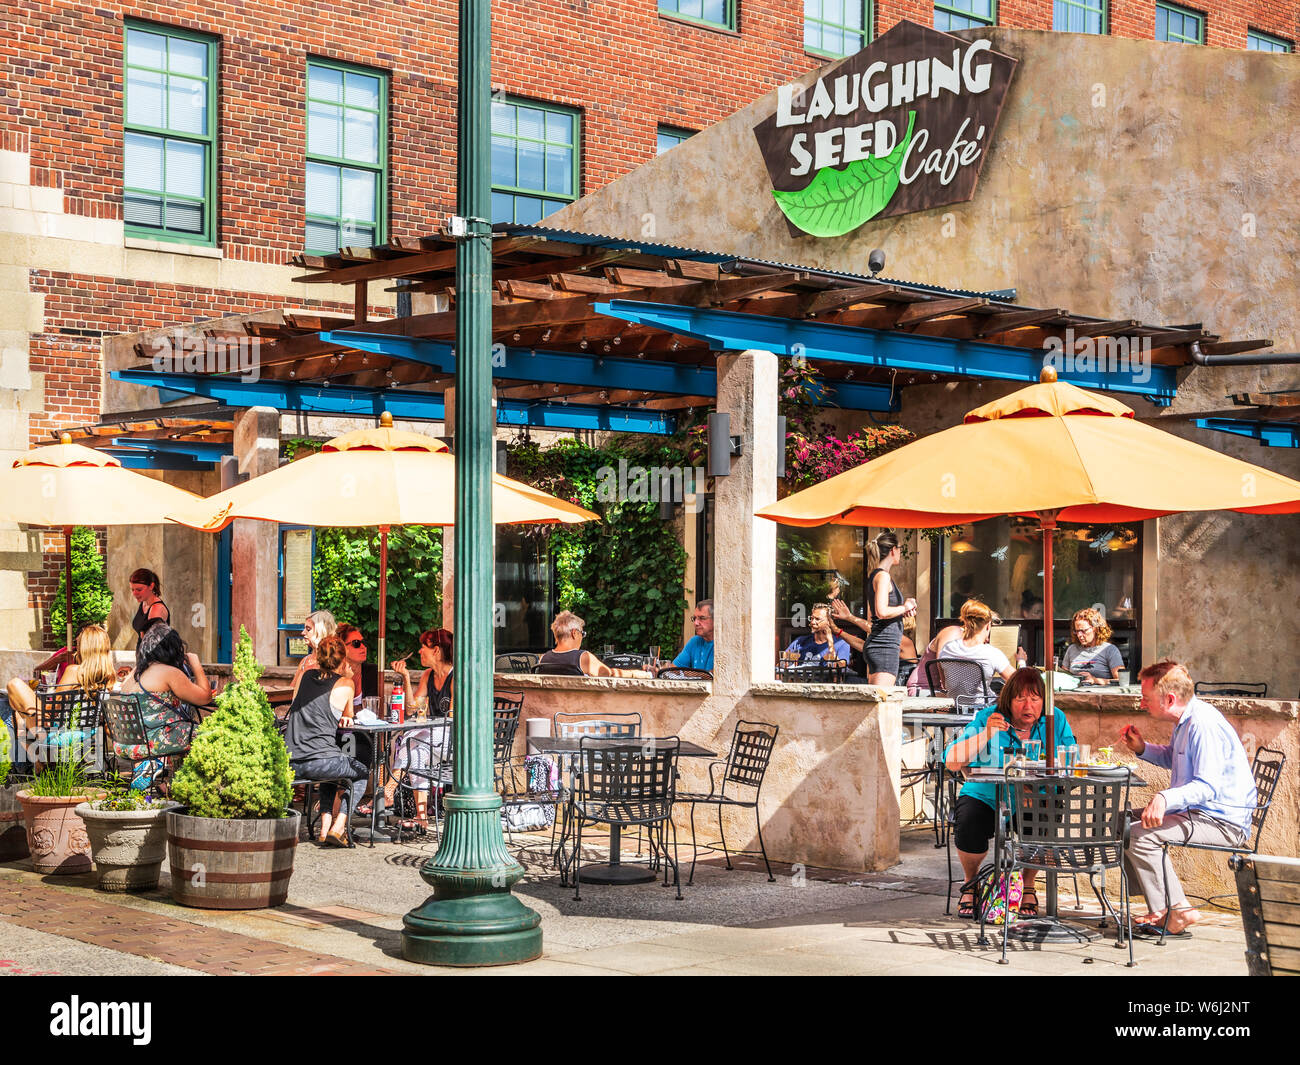 ASHEVILLE, NC, USA-27 Juillet 19 : The Laughing Seed Cafe, sur Wall Street dans le centre-ville de Asheville, est occupé avec les clients à l'air libre de l'environnement. Banque D'Images